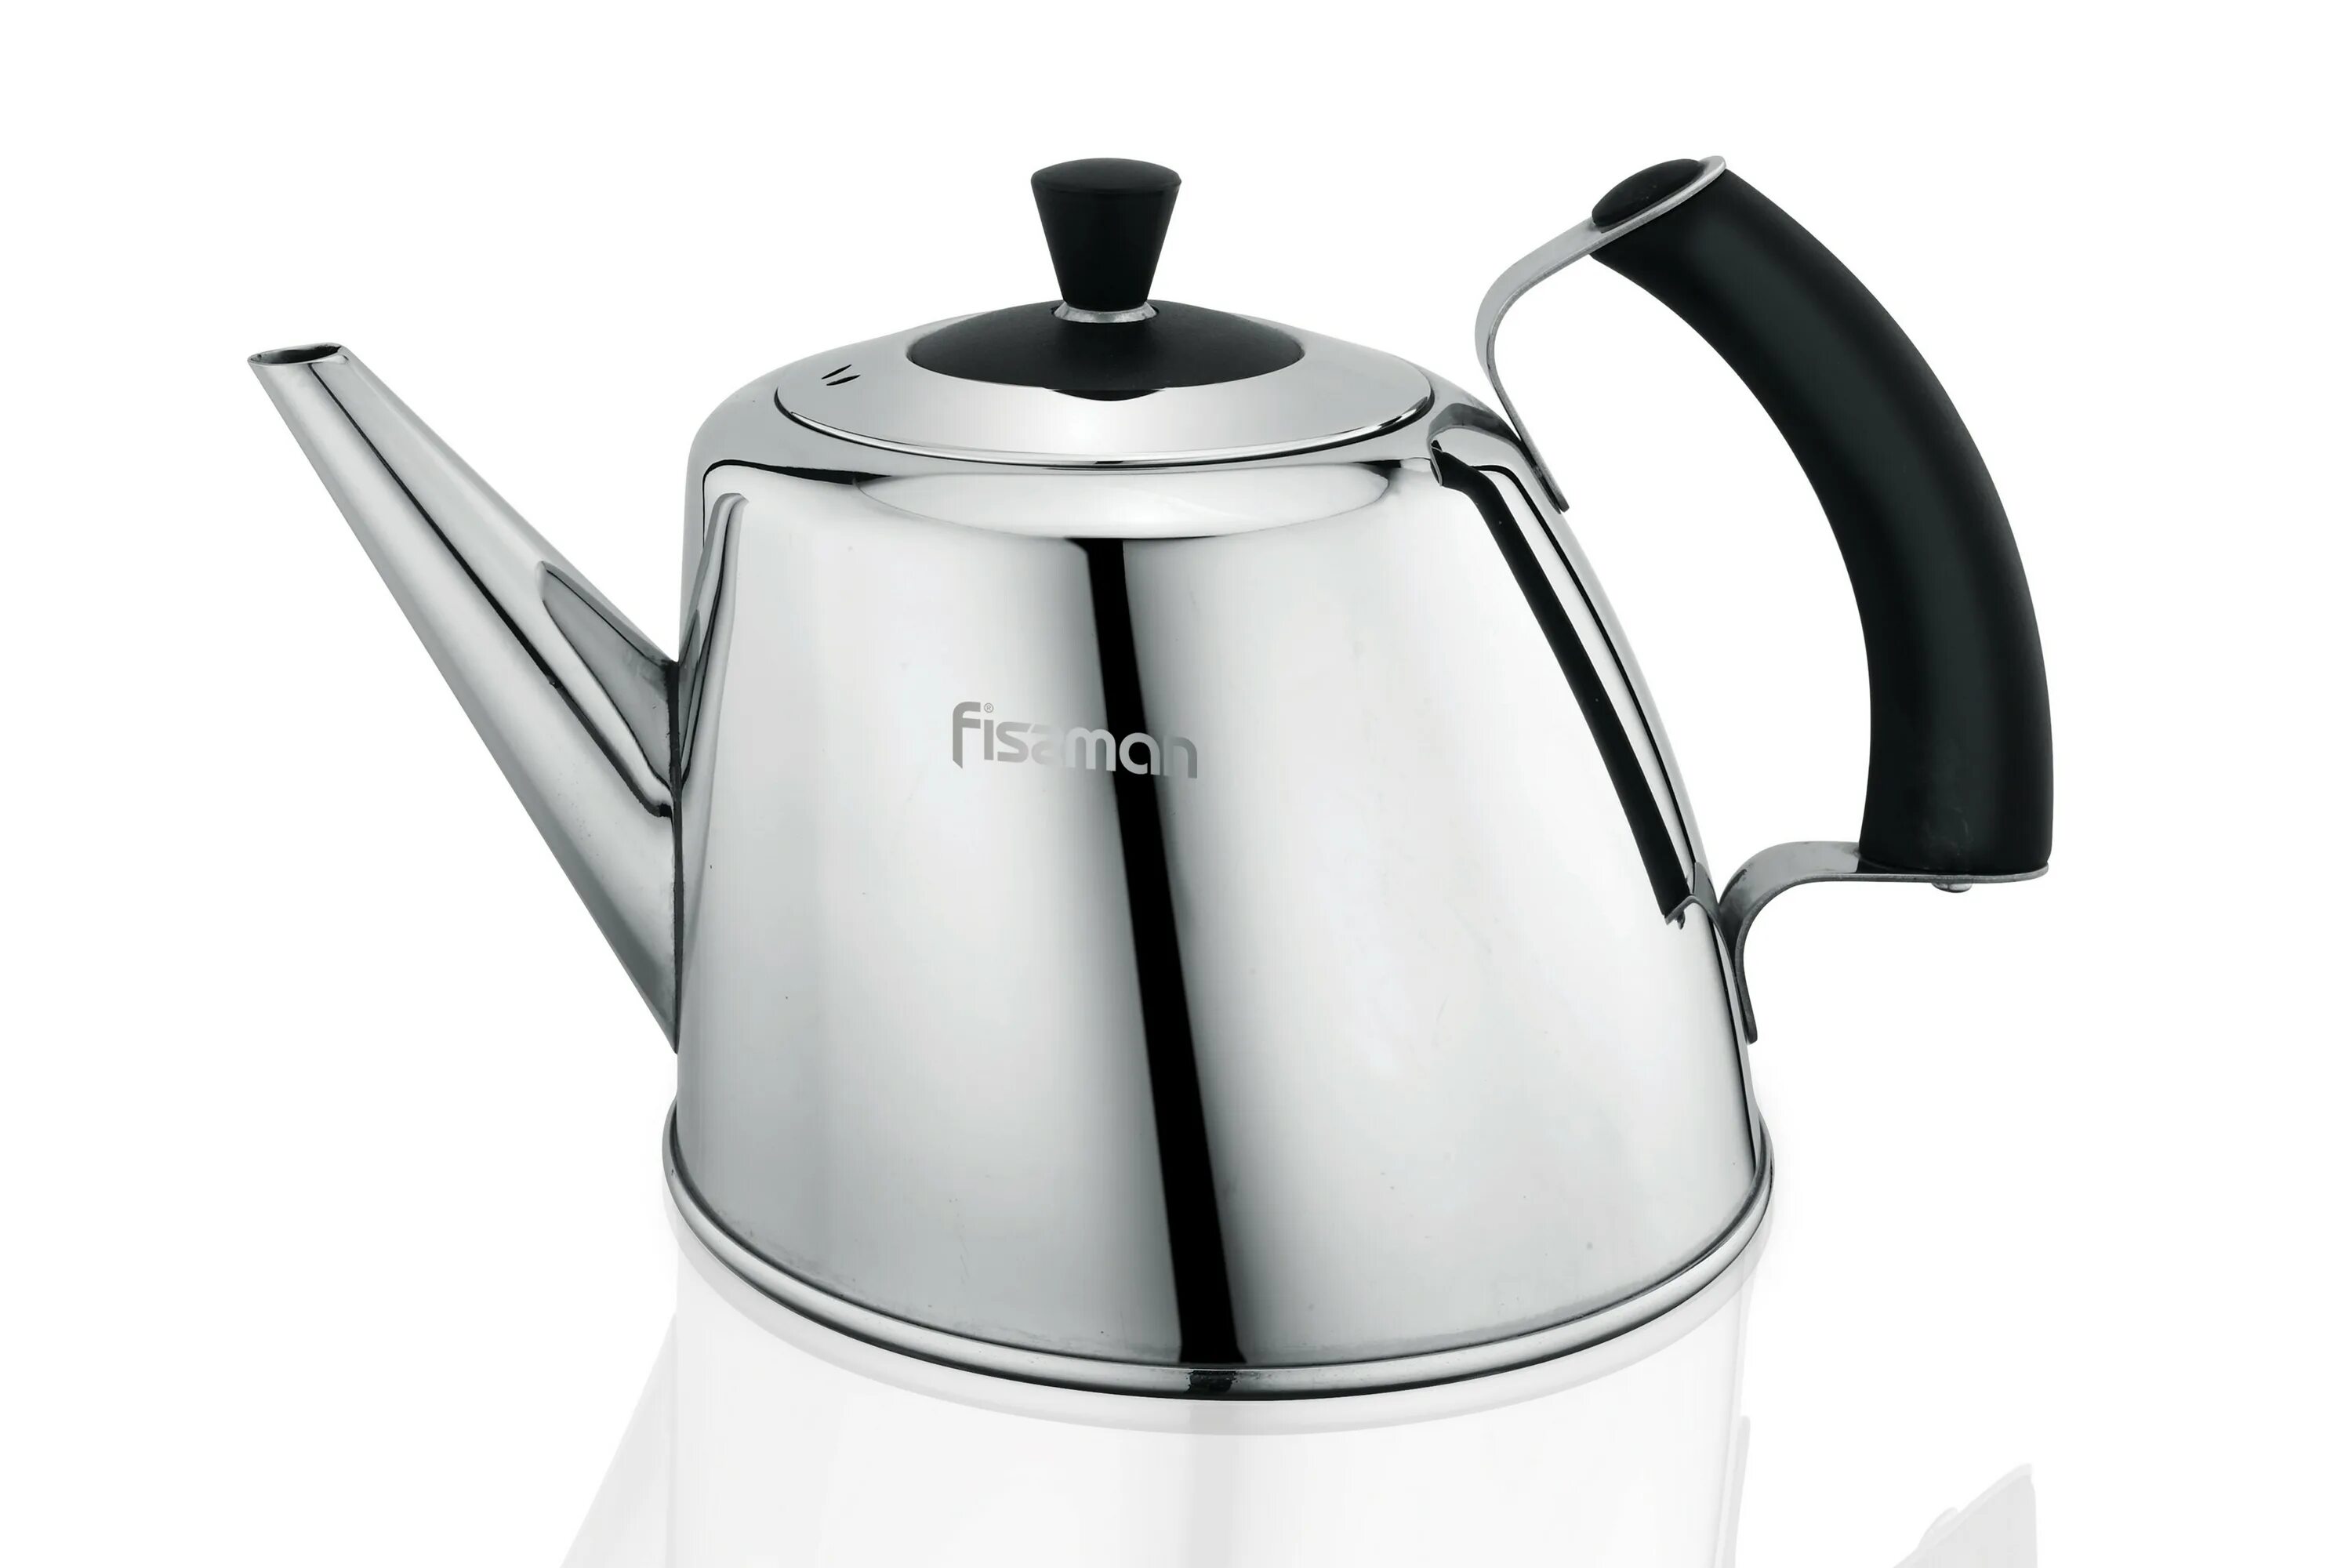 Какие бывают чайники. Чайник для плиты Fissman. 5957 Fissman чайник для кипячения воды Gemma 1,8л (нерж.сталь). Чайник Fissman 5929. Fissman чайник ml-25c.